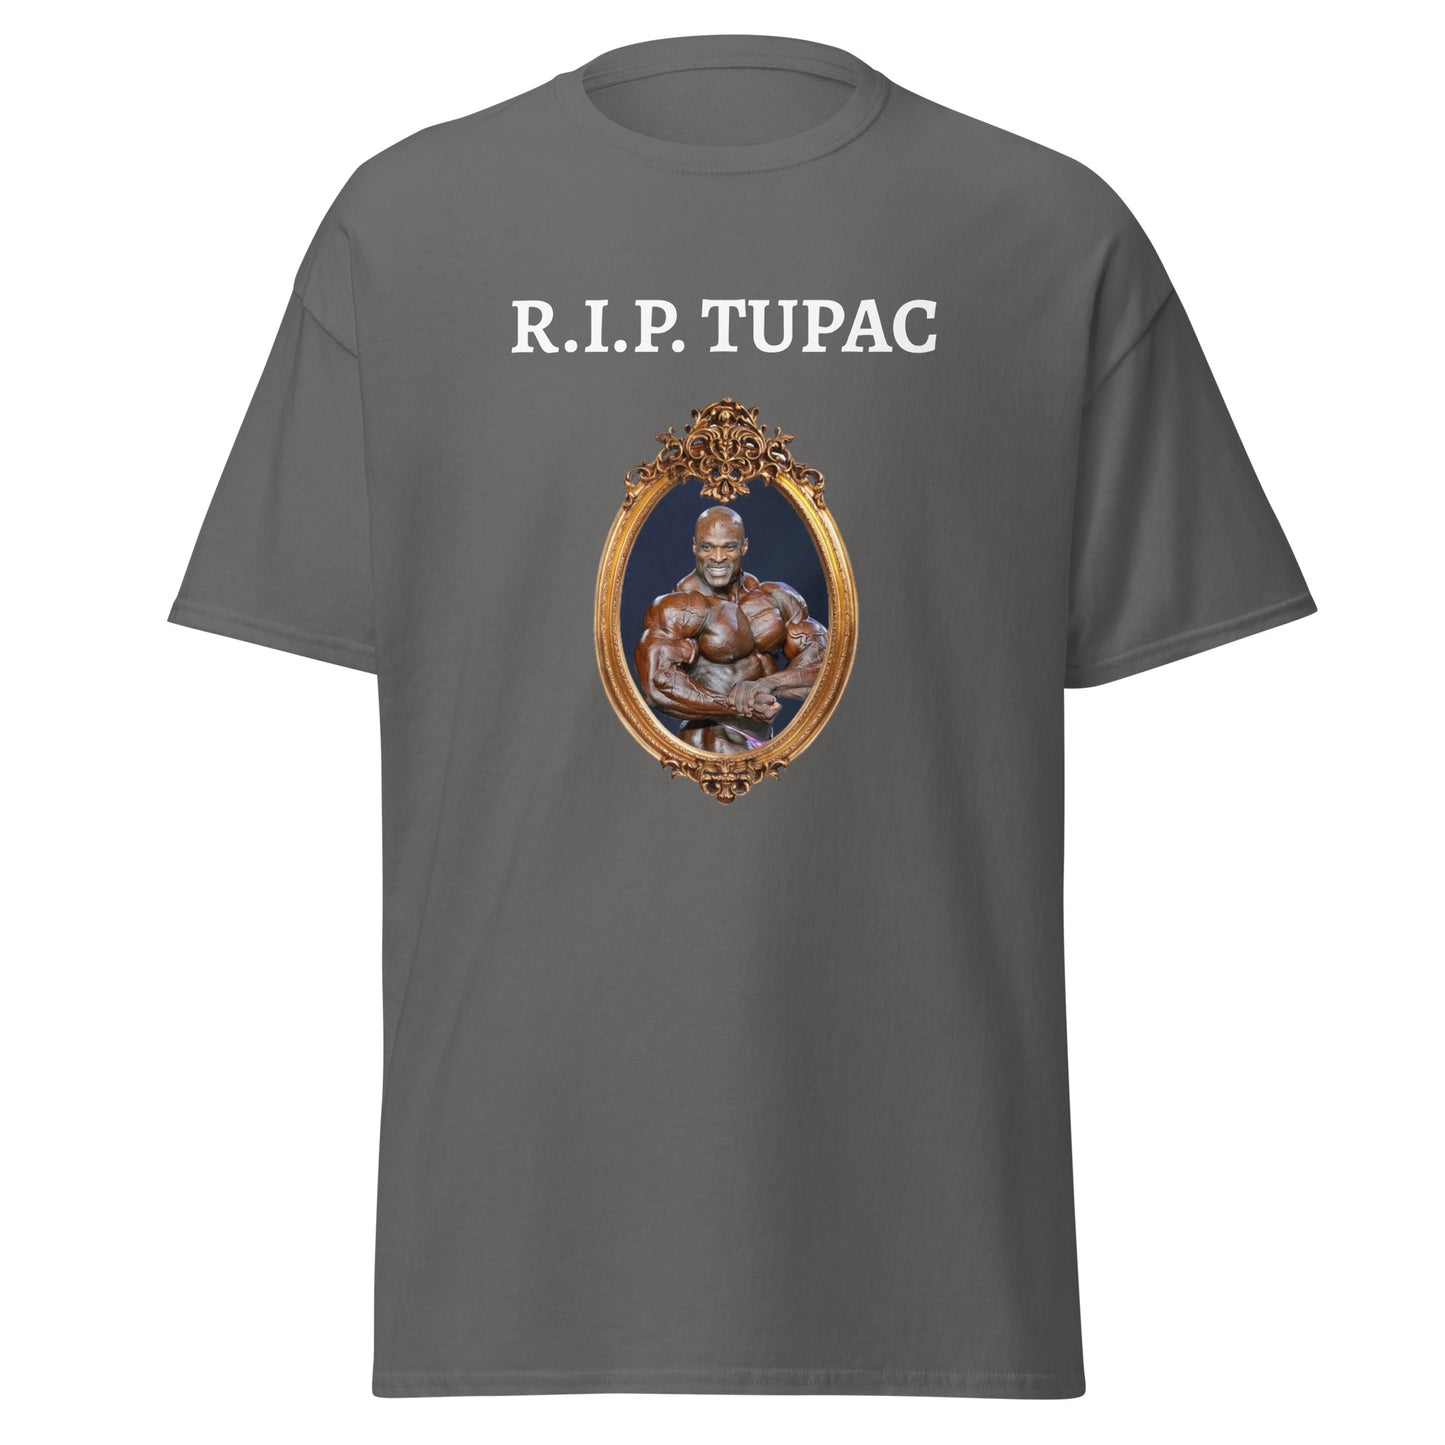 R.I.P. TUPAC